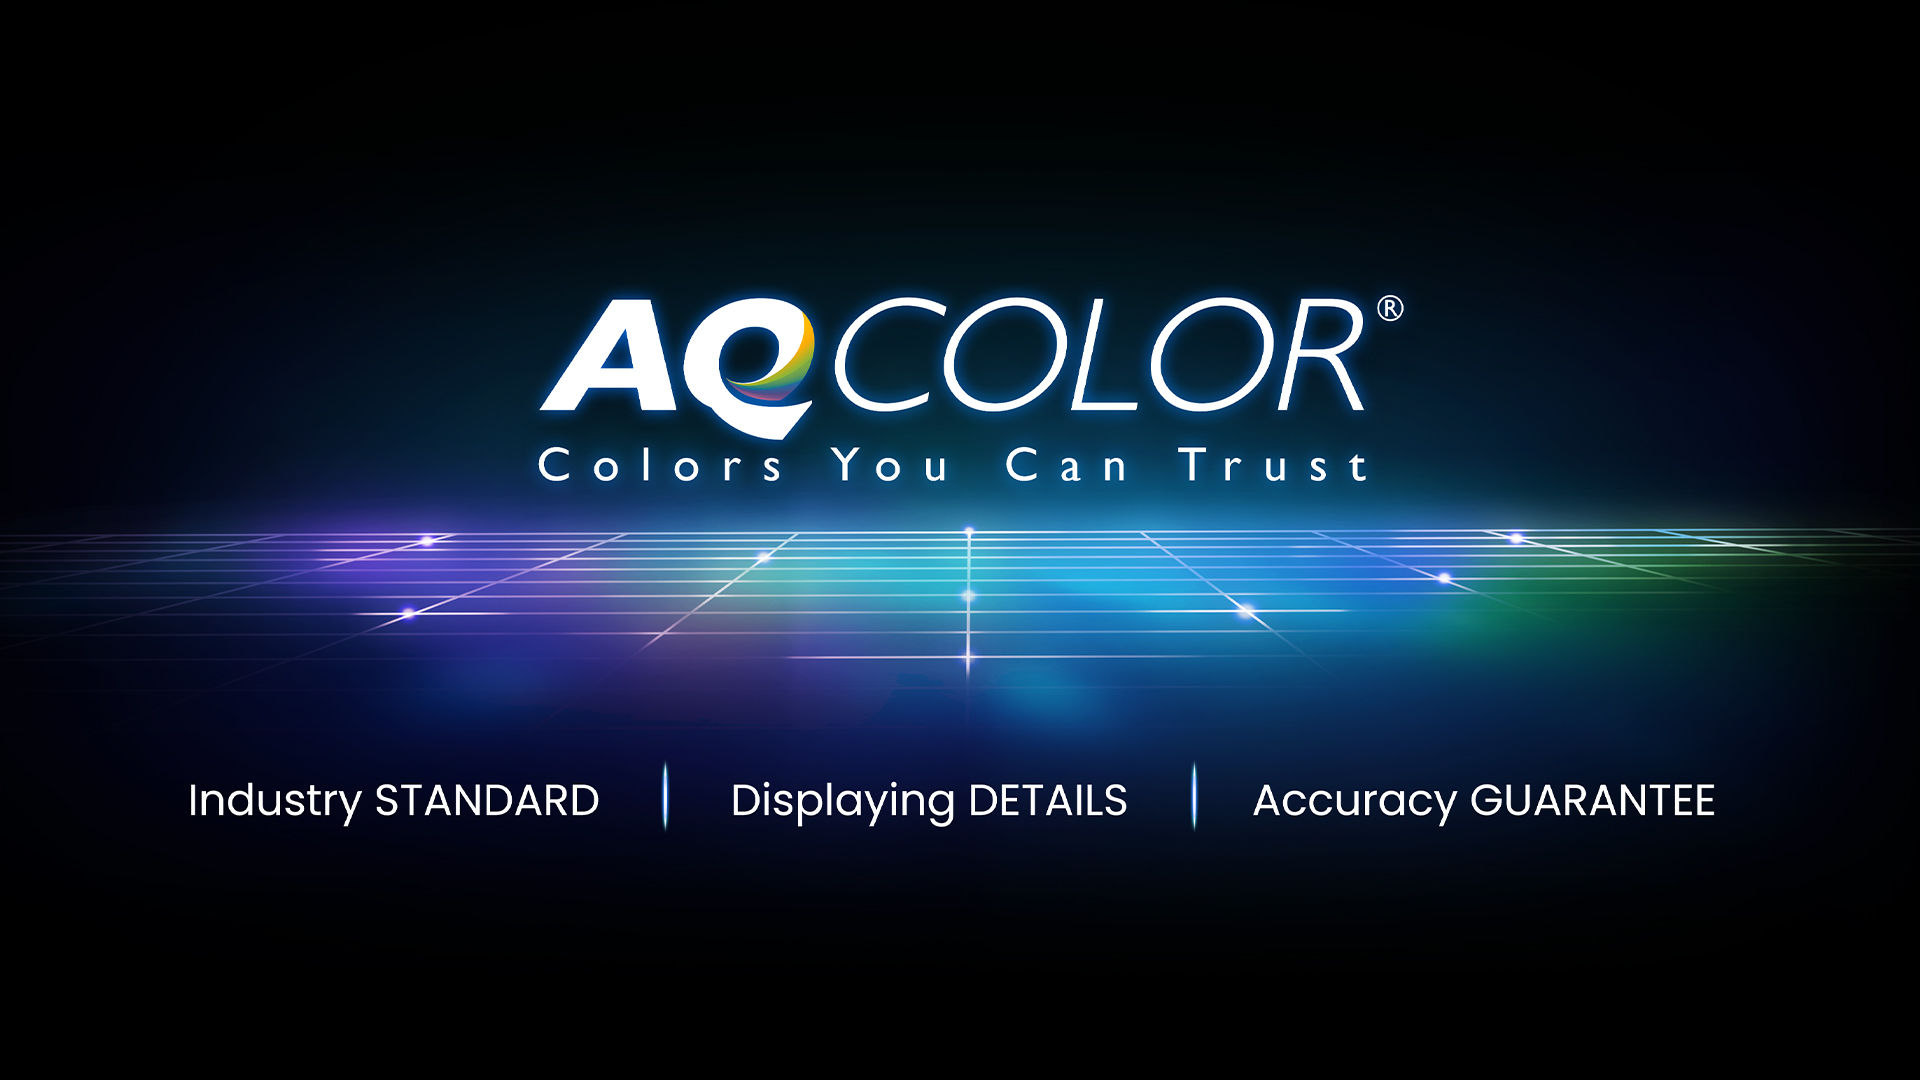 BenQ AQCOLOR technologie voor de meest accurate beeldkwaliteit